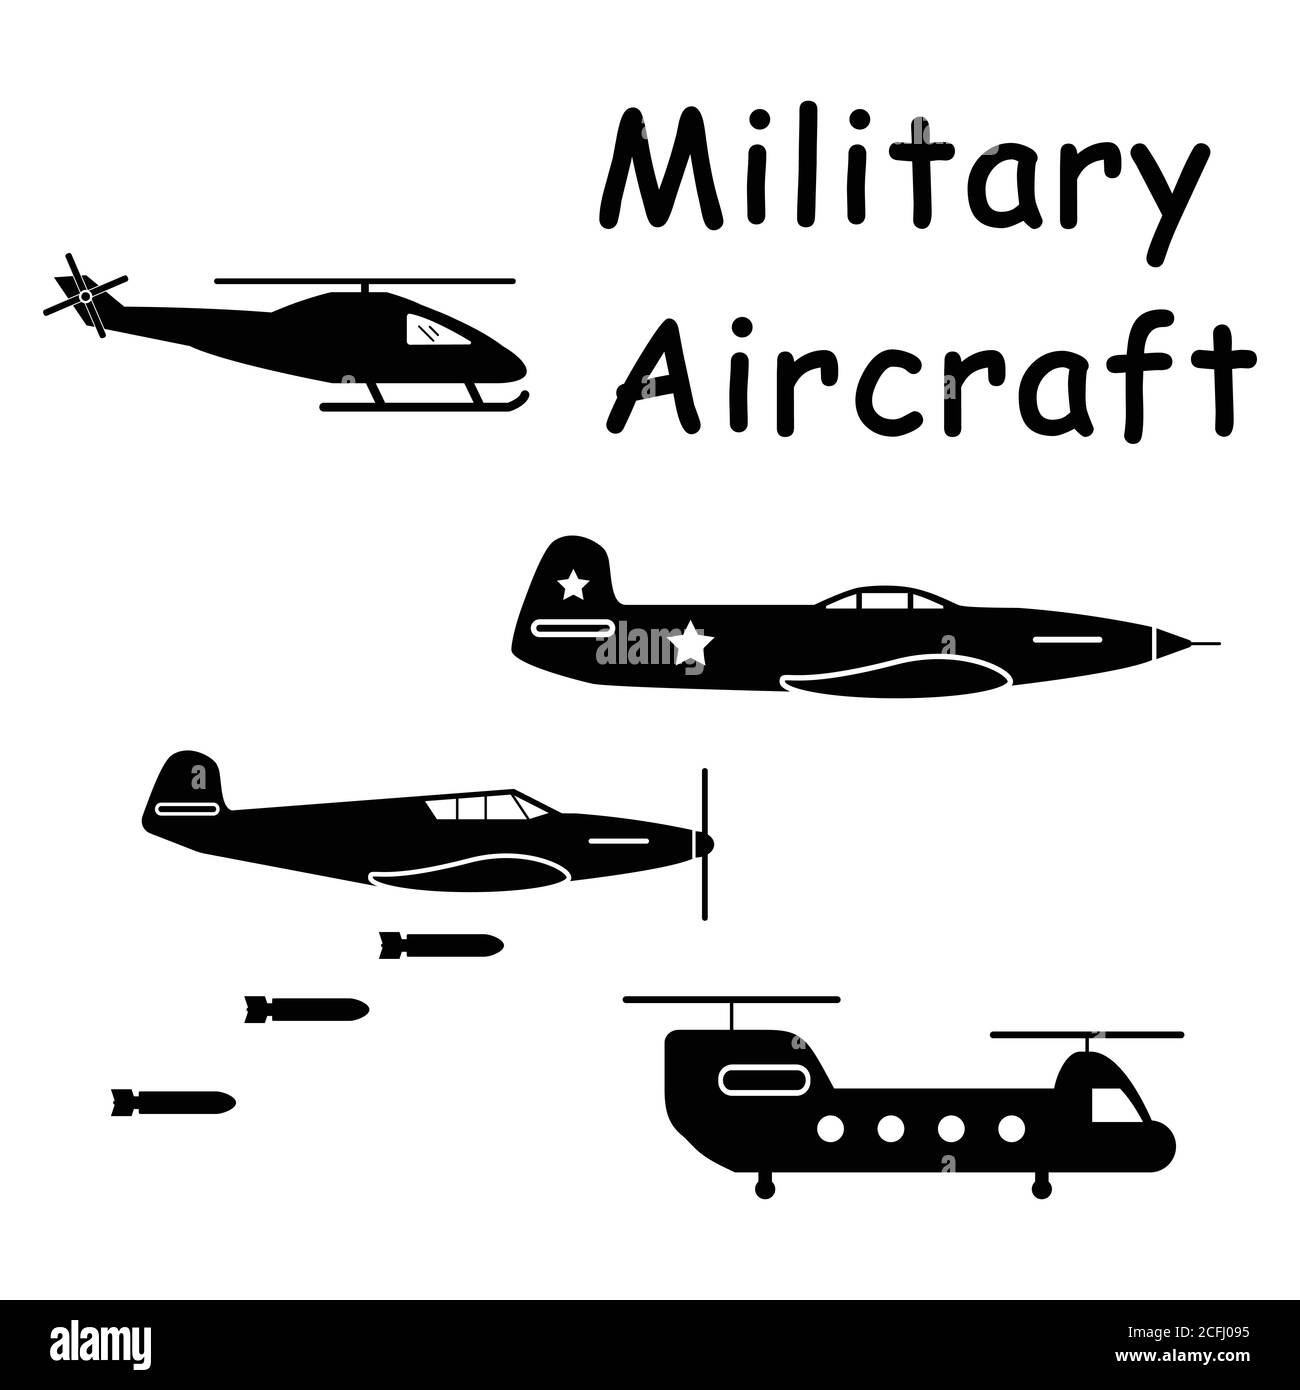 Aerei militari elicottero. Pittogramma che raffigura le macchine per aerei utilizzate nella guerra aerea, come i jet da combattimento e gli elicotteri. Vettore EPS Illustrazione Vettoriale